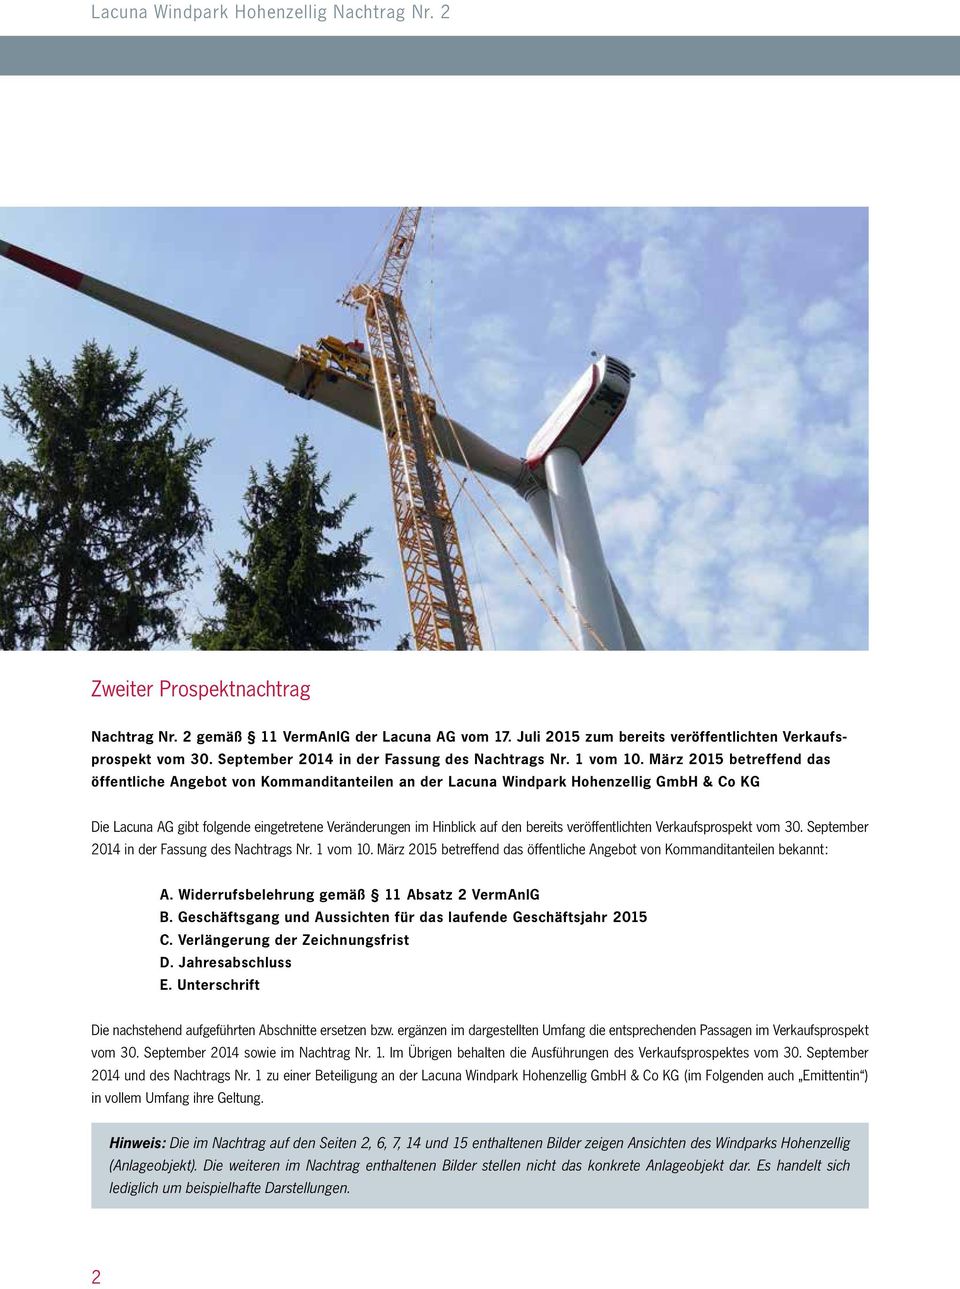 März 2015 betreffend das öffentliche Angebot von Kommanditanteilen an der Lacuna Windpark Hohenzellig GmbH & Co KG Die Lacuna AG gibt folgende eingetretene Veränderungen im Hinblick auf den bereits